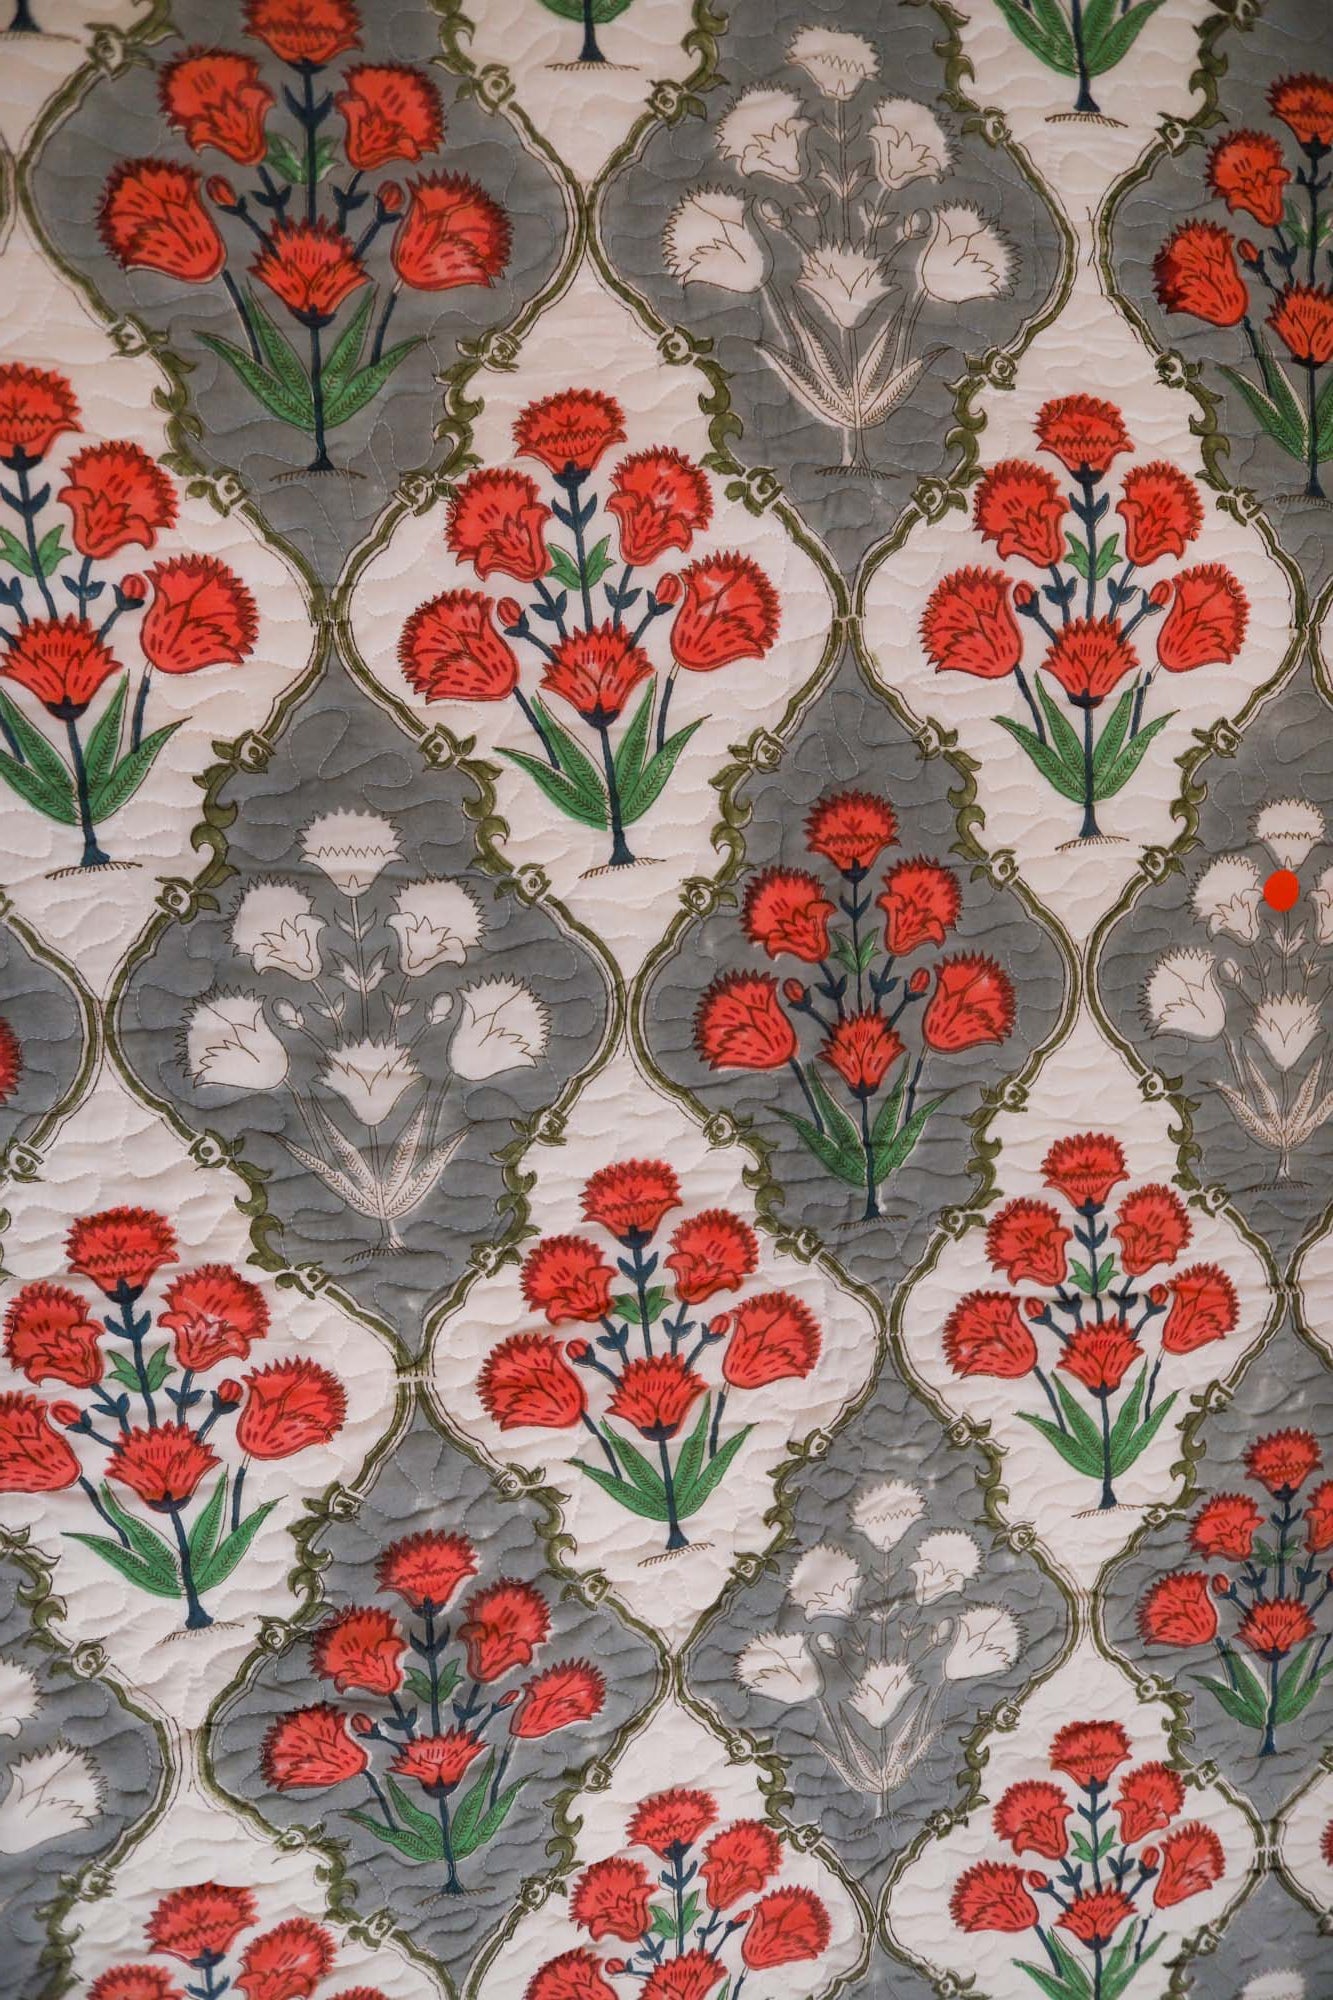 Dahlia Garden Bed Cover